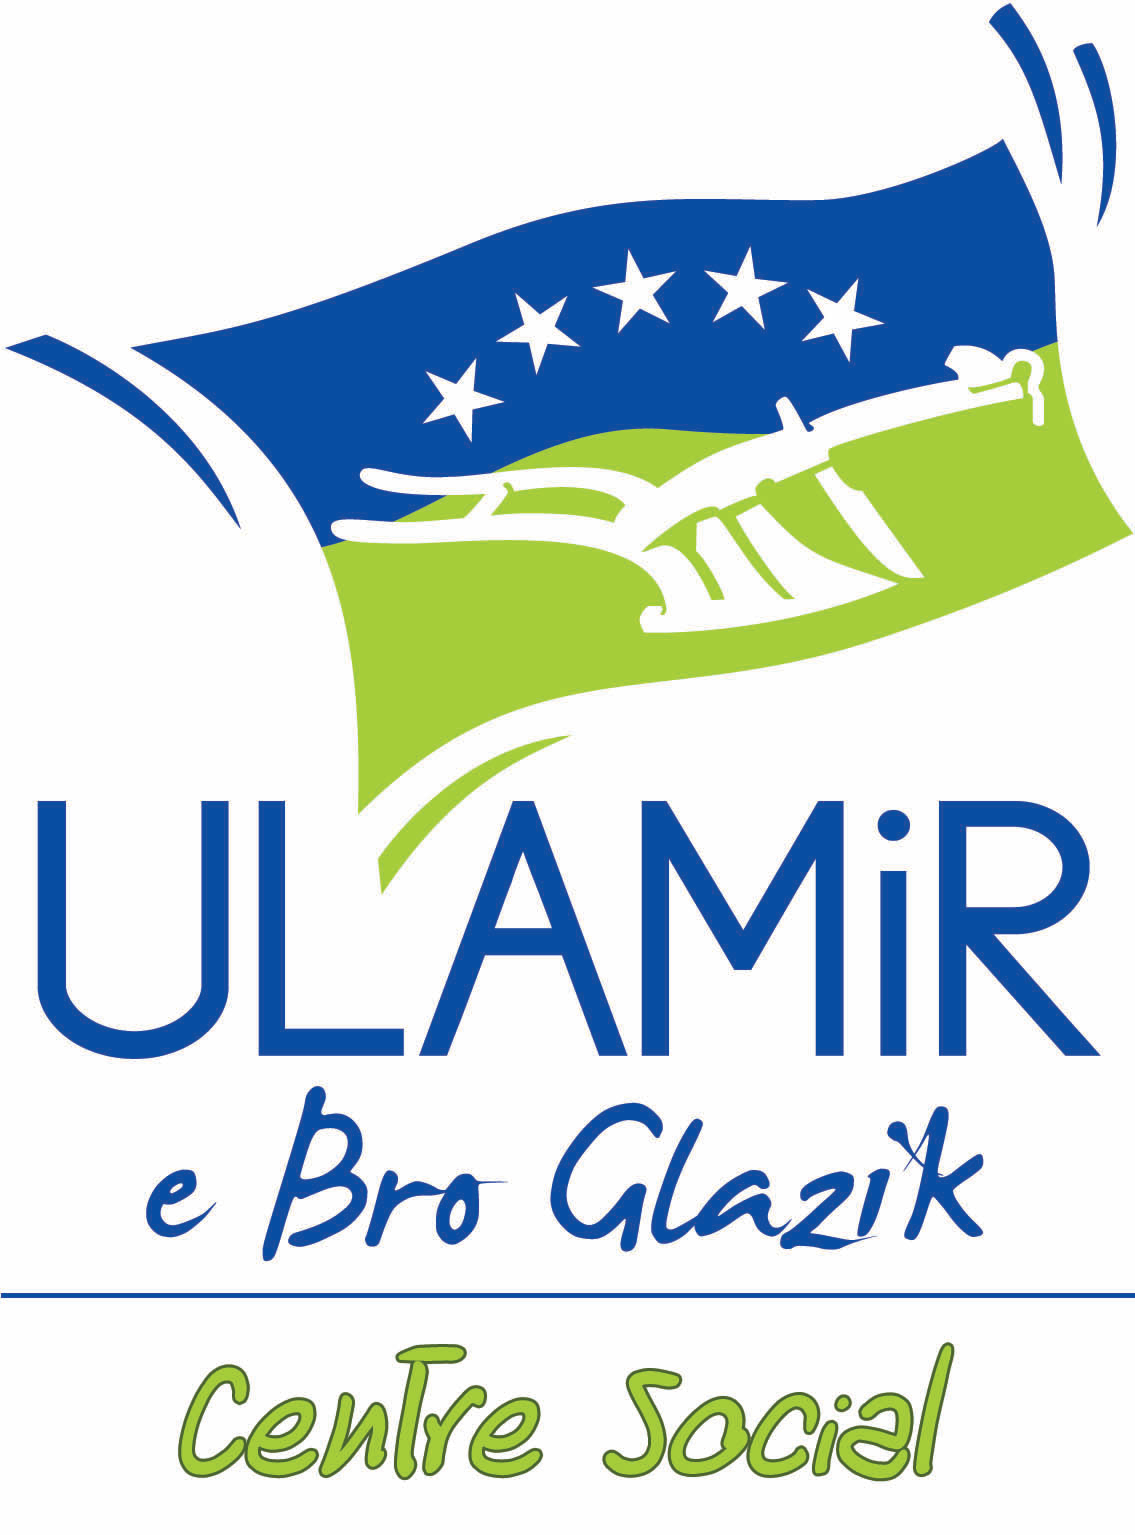 Ulamir E Bro Glazik